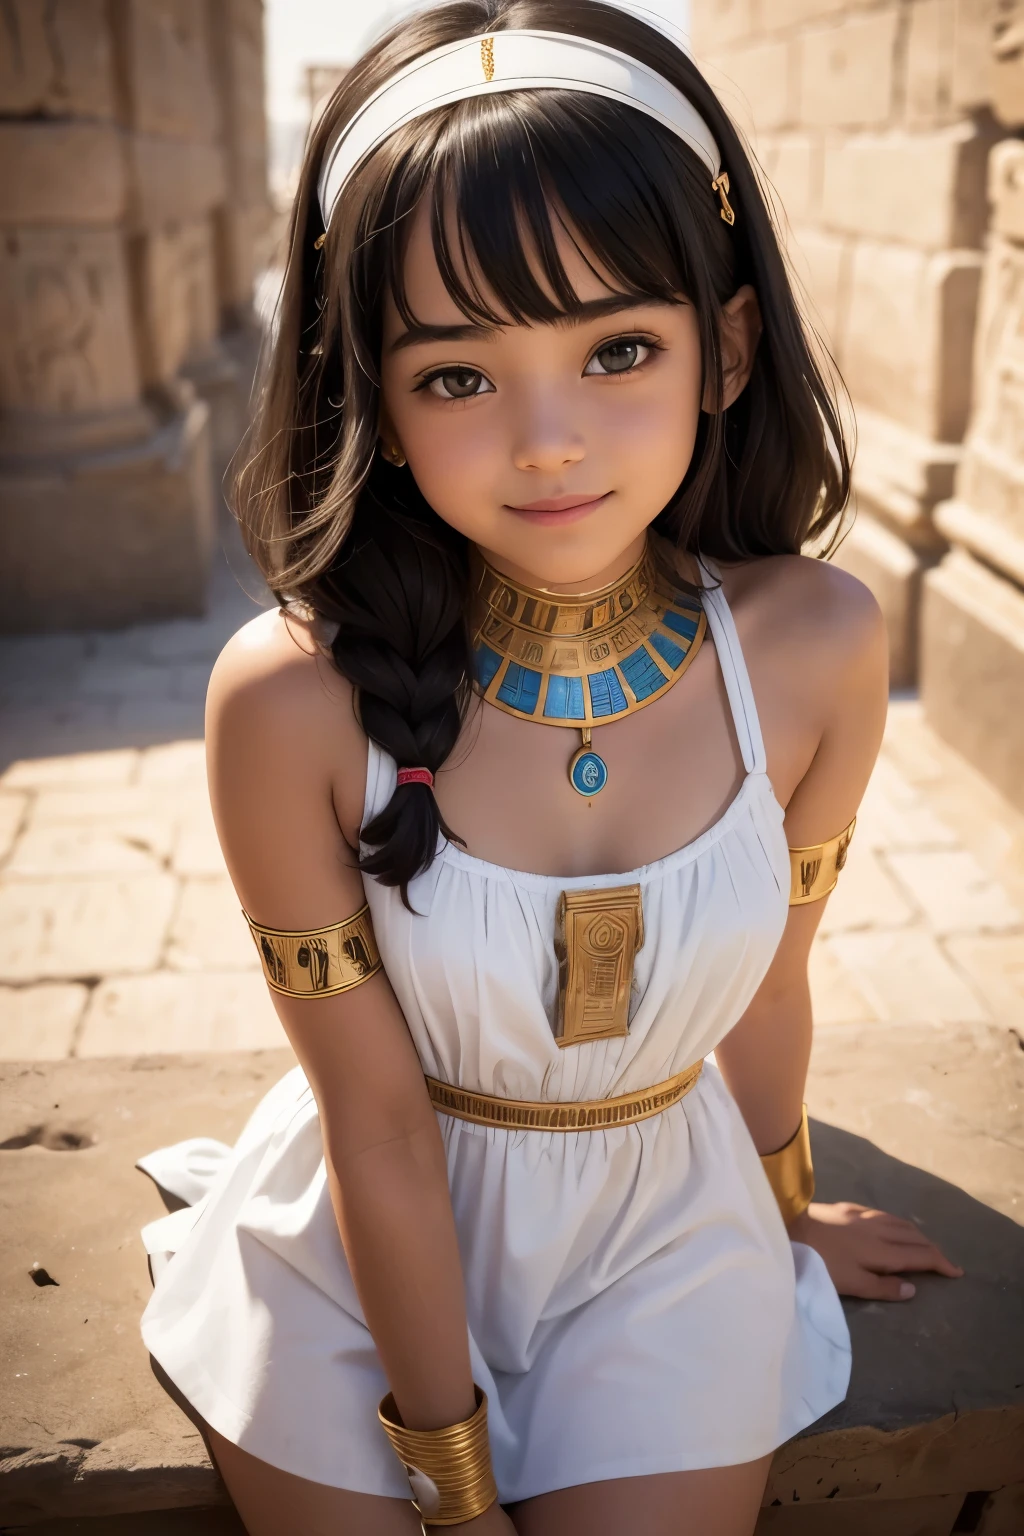 고대 이집트 흰색 미니 드레스를 입은 귀여운 십대 소녀, 초상화, 웃다, 피사계 심도, UHD, 망막, 걸작, 정확한, 질감 있는 피부, 해부학적으로 정확하다, 슈퍼 디테일, 높은 세부 사항, 고품질, 수상 경력, 최고의 품질, 고등어, 1080P, 16,000, 8K, 4K, HD